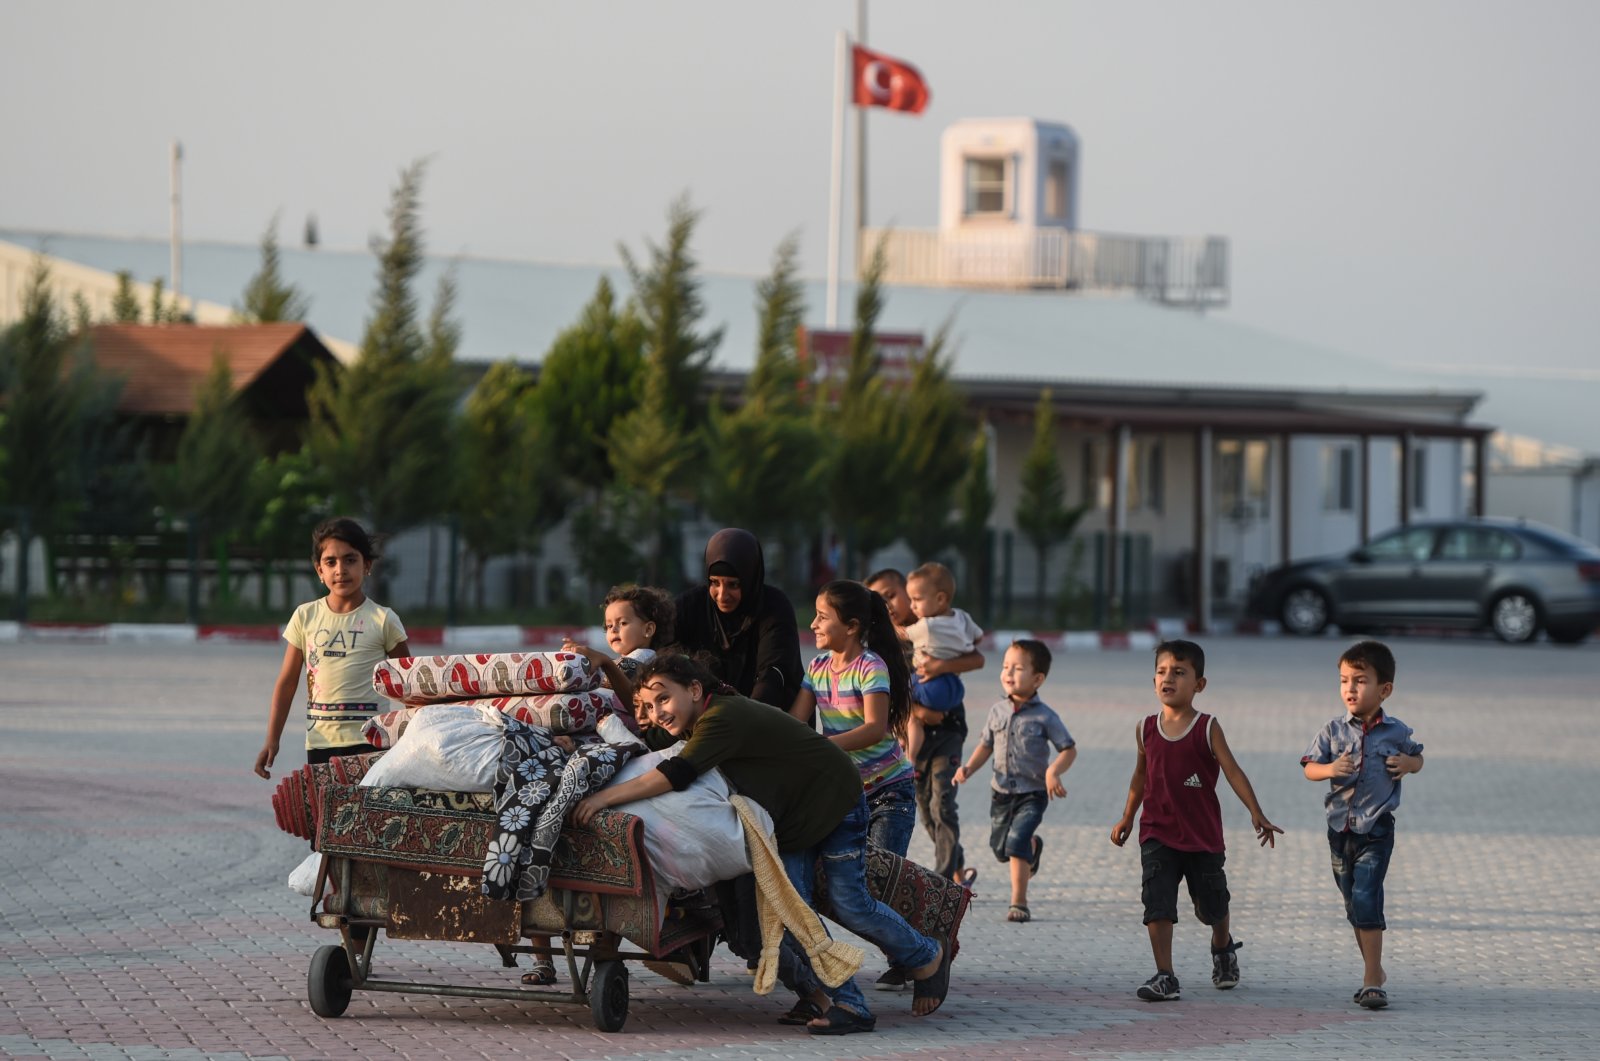 ‘Operasi terbesar yang pernah ada’: PBB memuji Turki karena menampung lebih dari 4 juta pengungsi